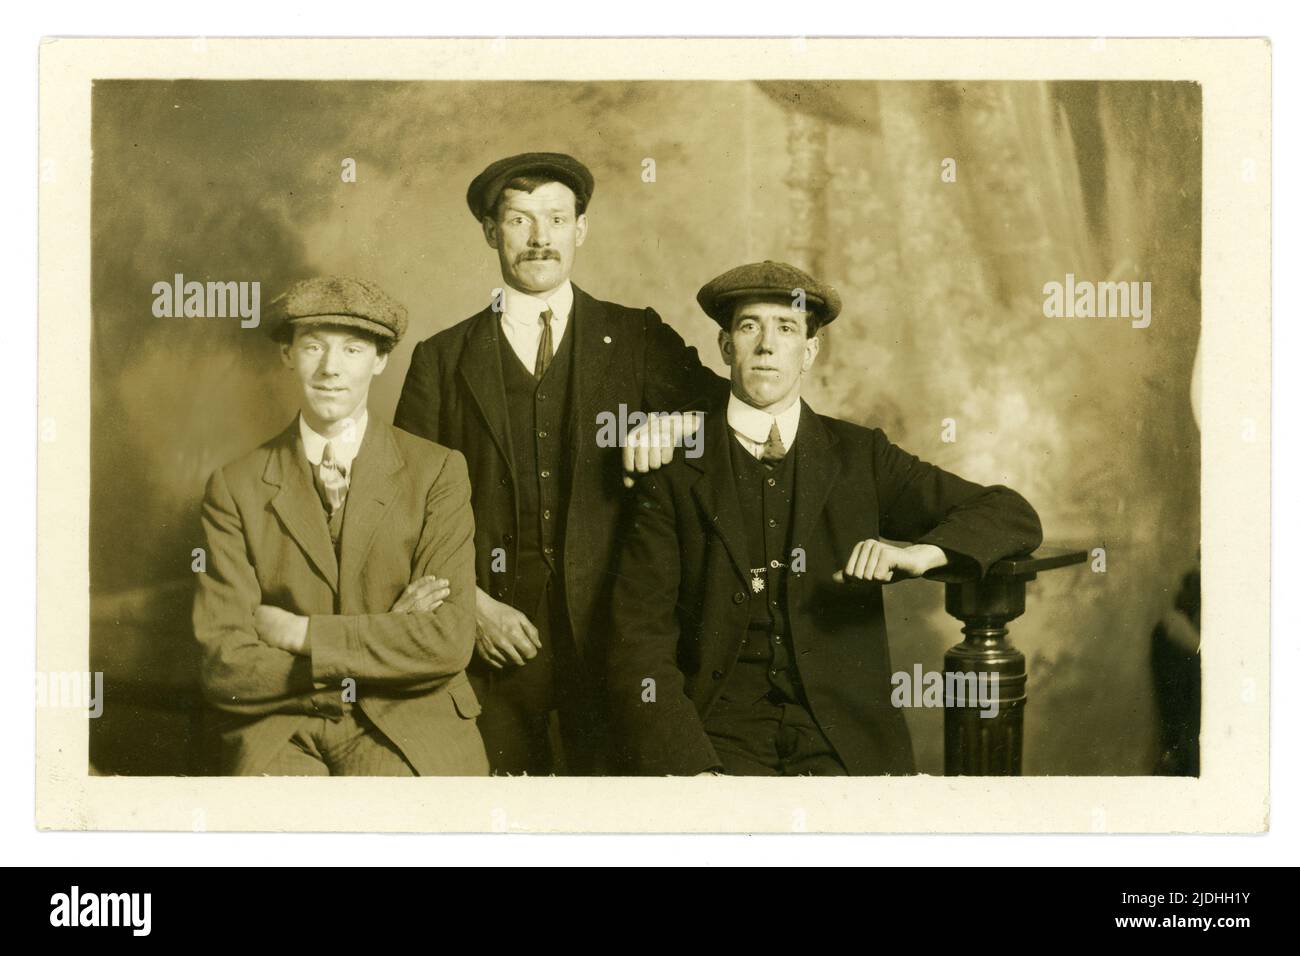 Original et clair au début des années 1900, le studio de portrait groupe de 3 hommes de classe ouvrière portant des casquettes plates, éventuellement une photo d'enrôlement de WW1 amis, studio de photographe, Cuttriss, Neville Street, Newcastle-on-Tyne, Royaume-Uni vers 1914-1919, Banque D'Images